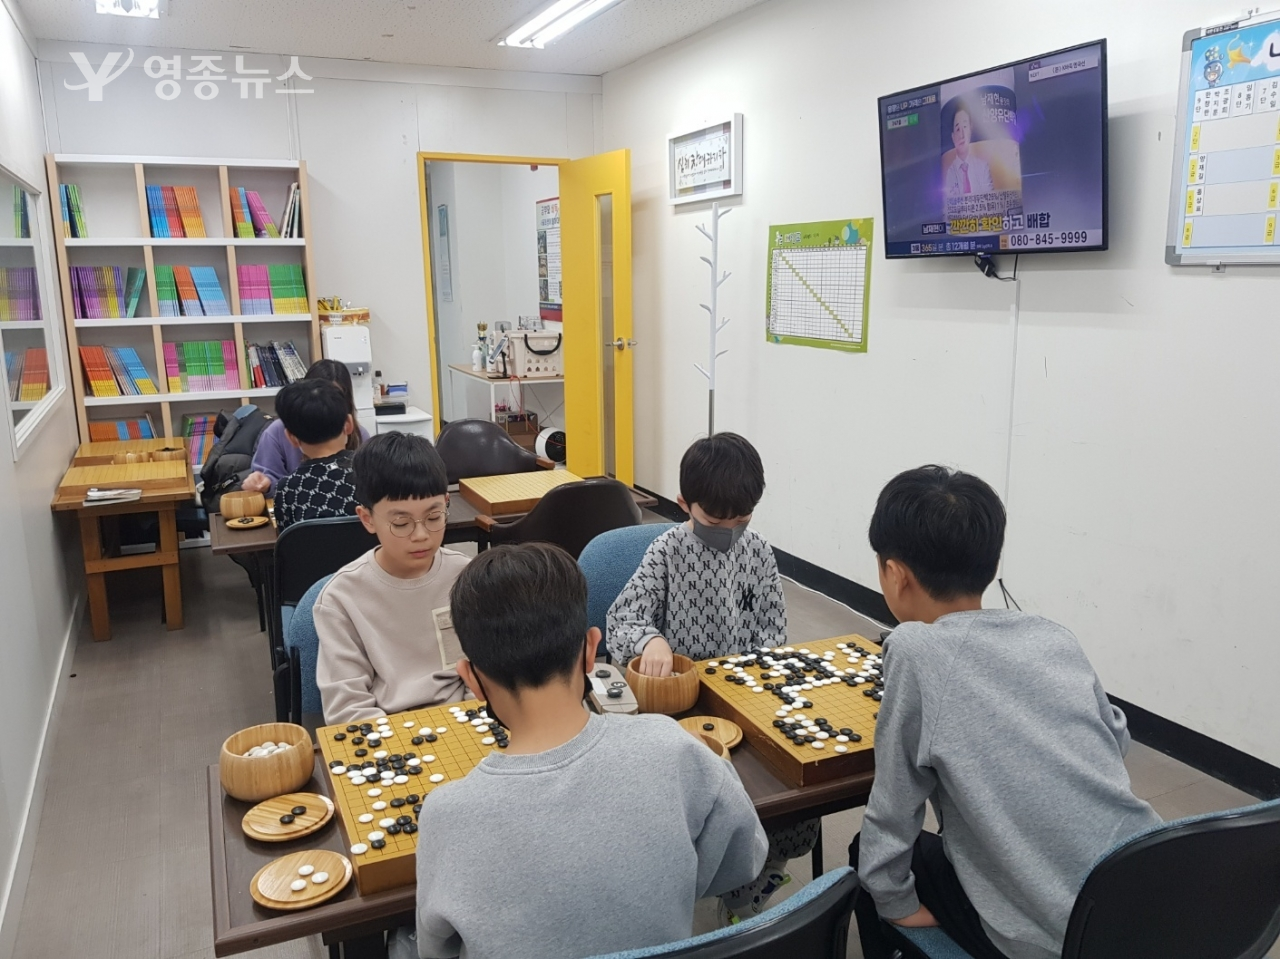 바둑과 체스 교육으로 사고력 향상, 영종한창한바둑체스사고력학원 2호점 개설